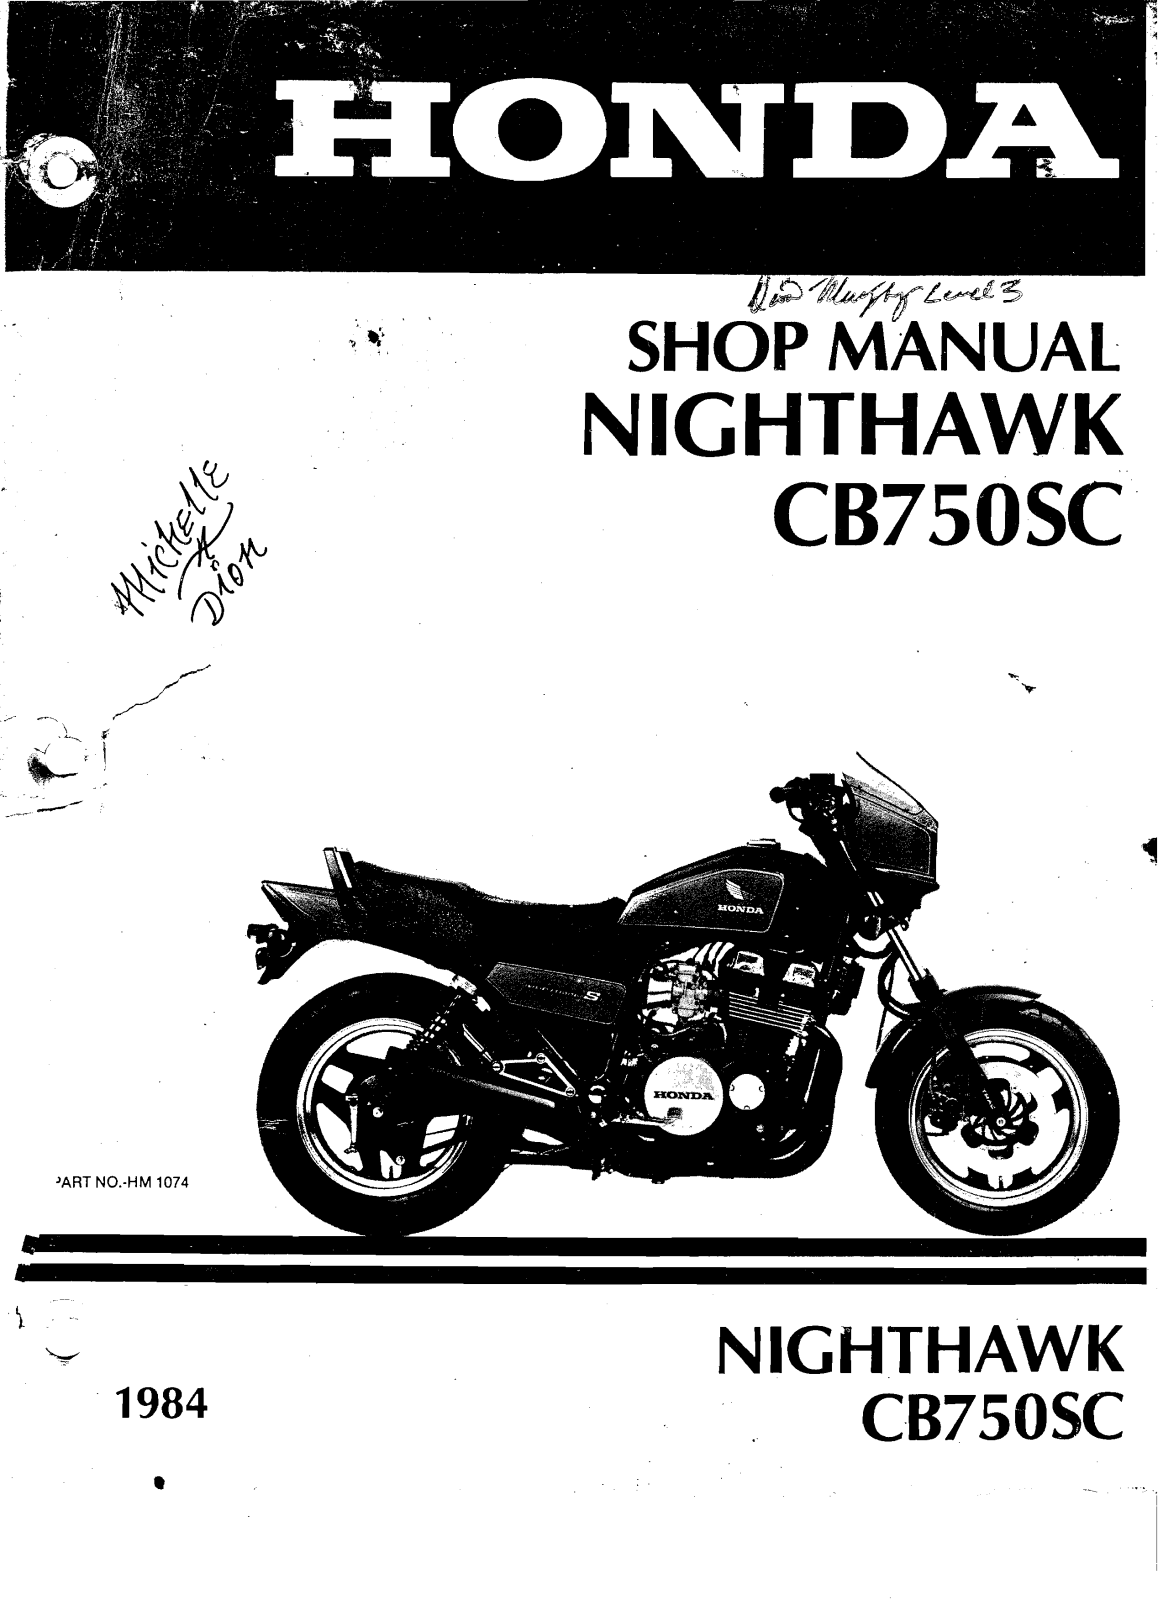 Honda CB750SC Nighthawk 84 Service Manual